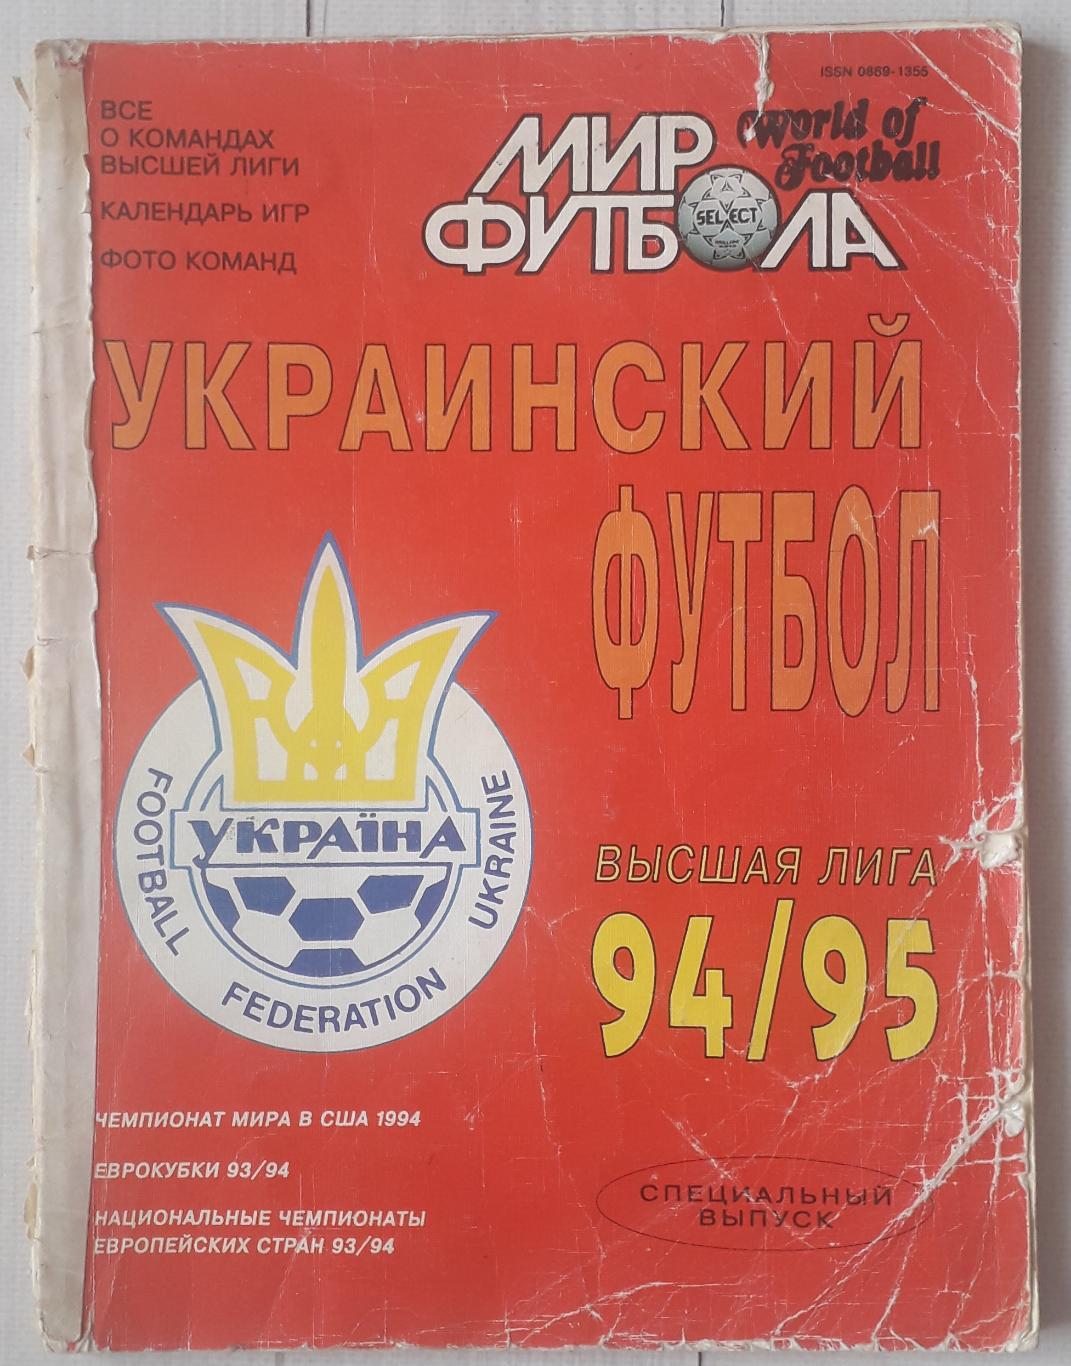 Мир футбола. Український футбол 94/95. Вища ліга. Спецвипуск